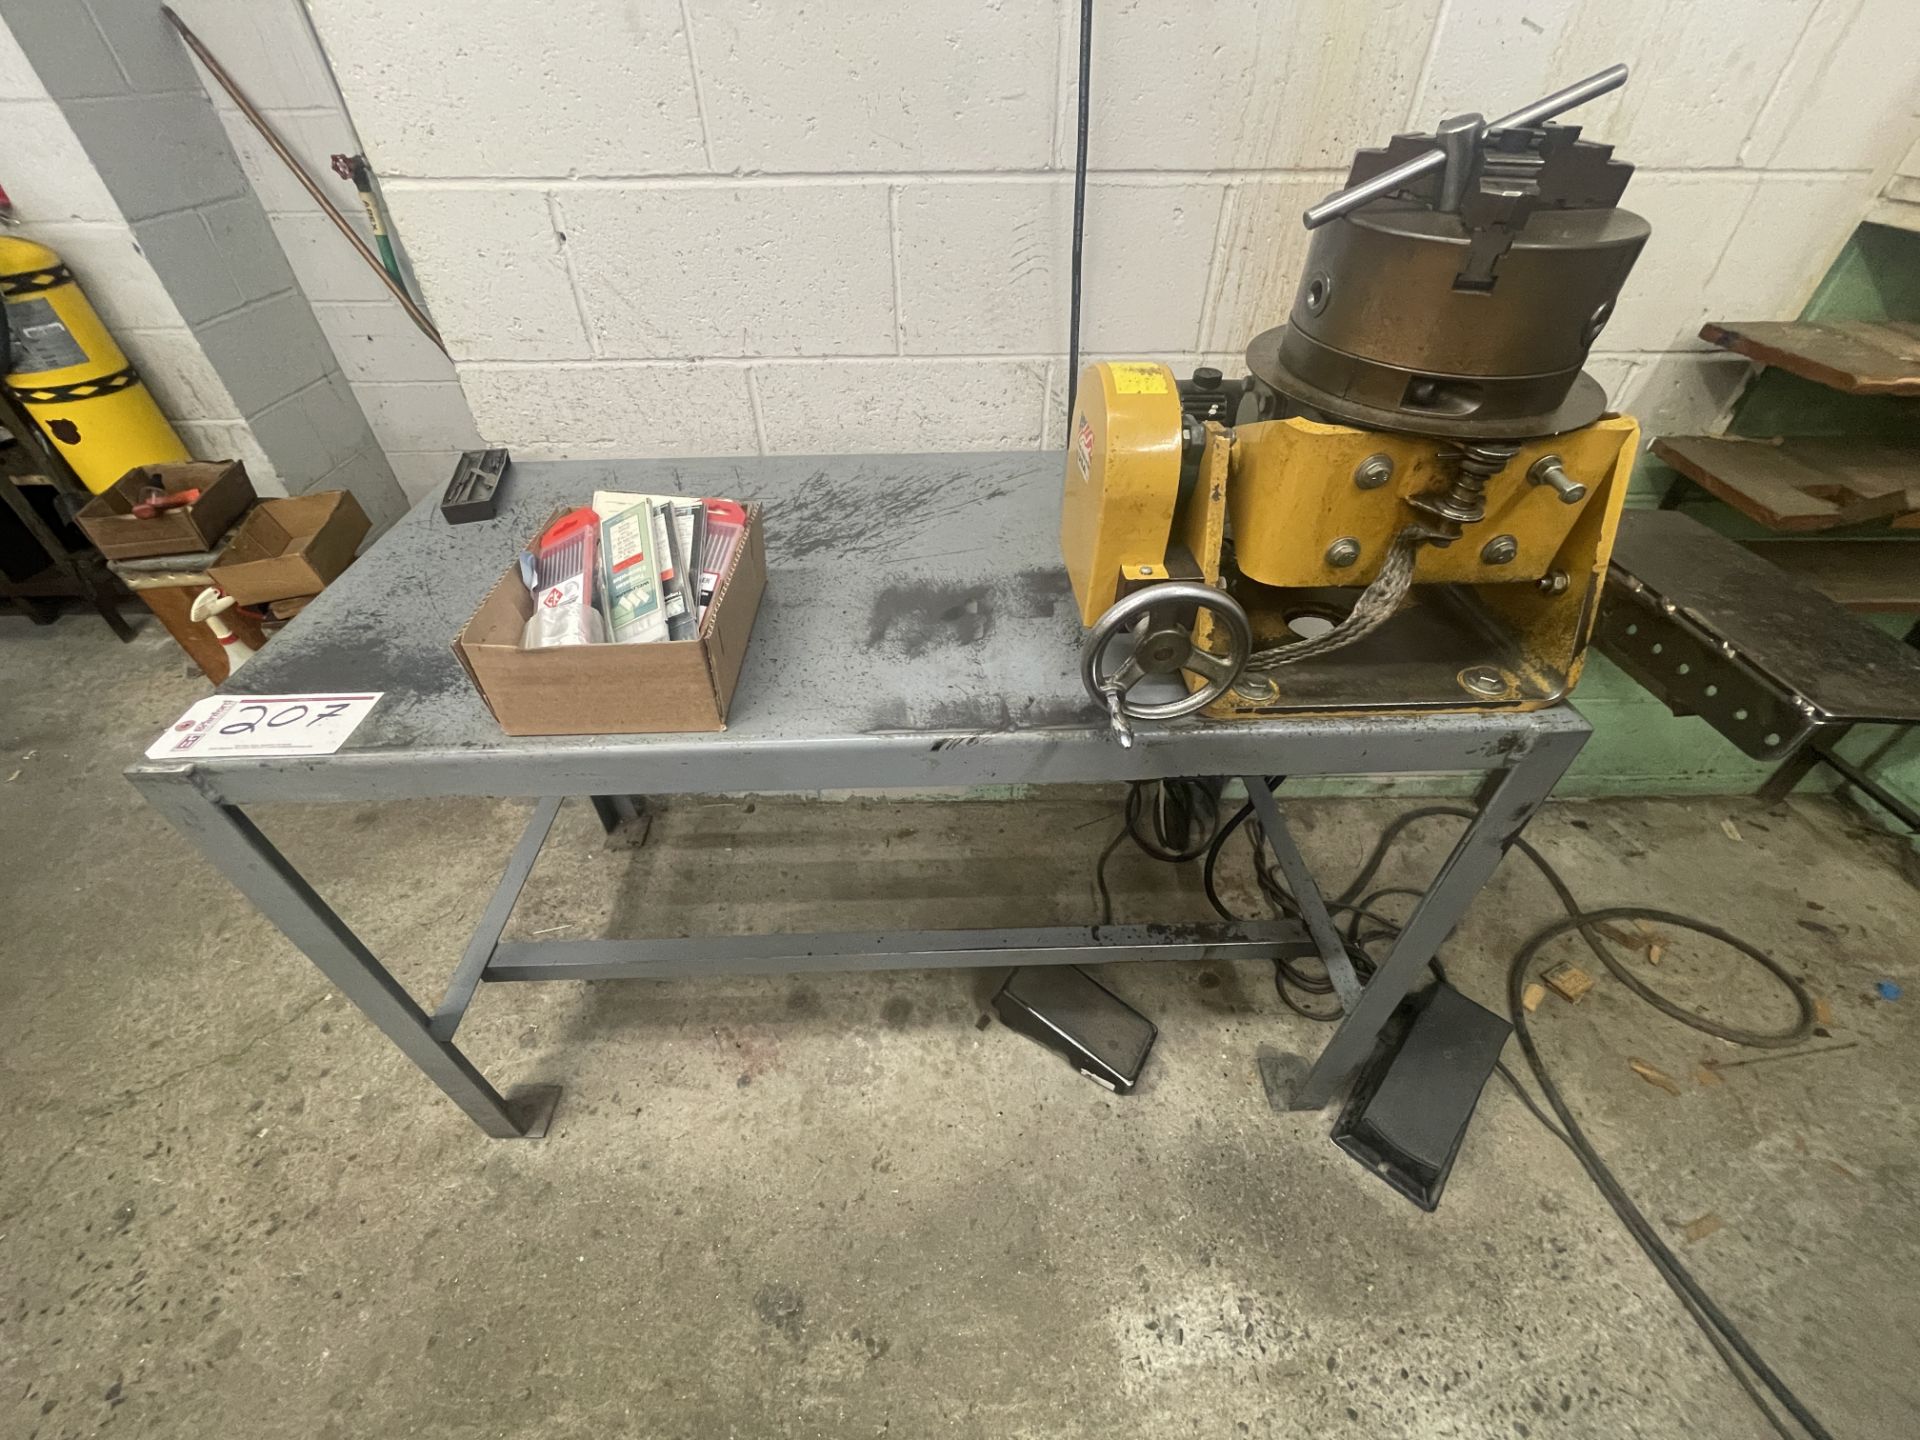 Approx. 48" x 24" heavy duty welding table